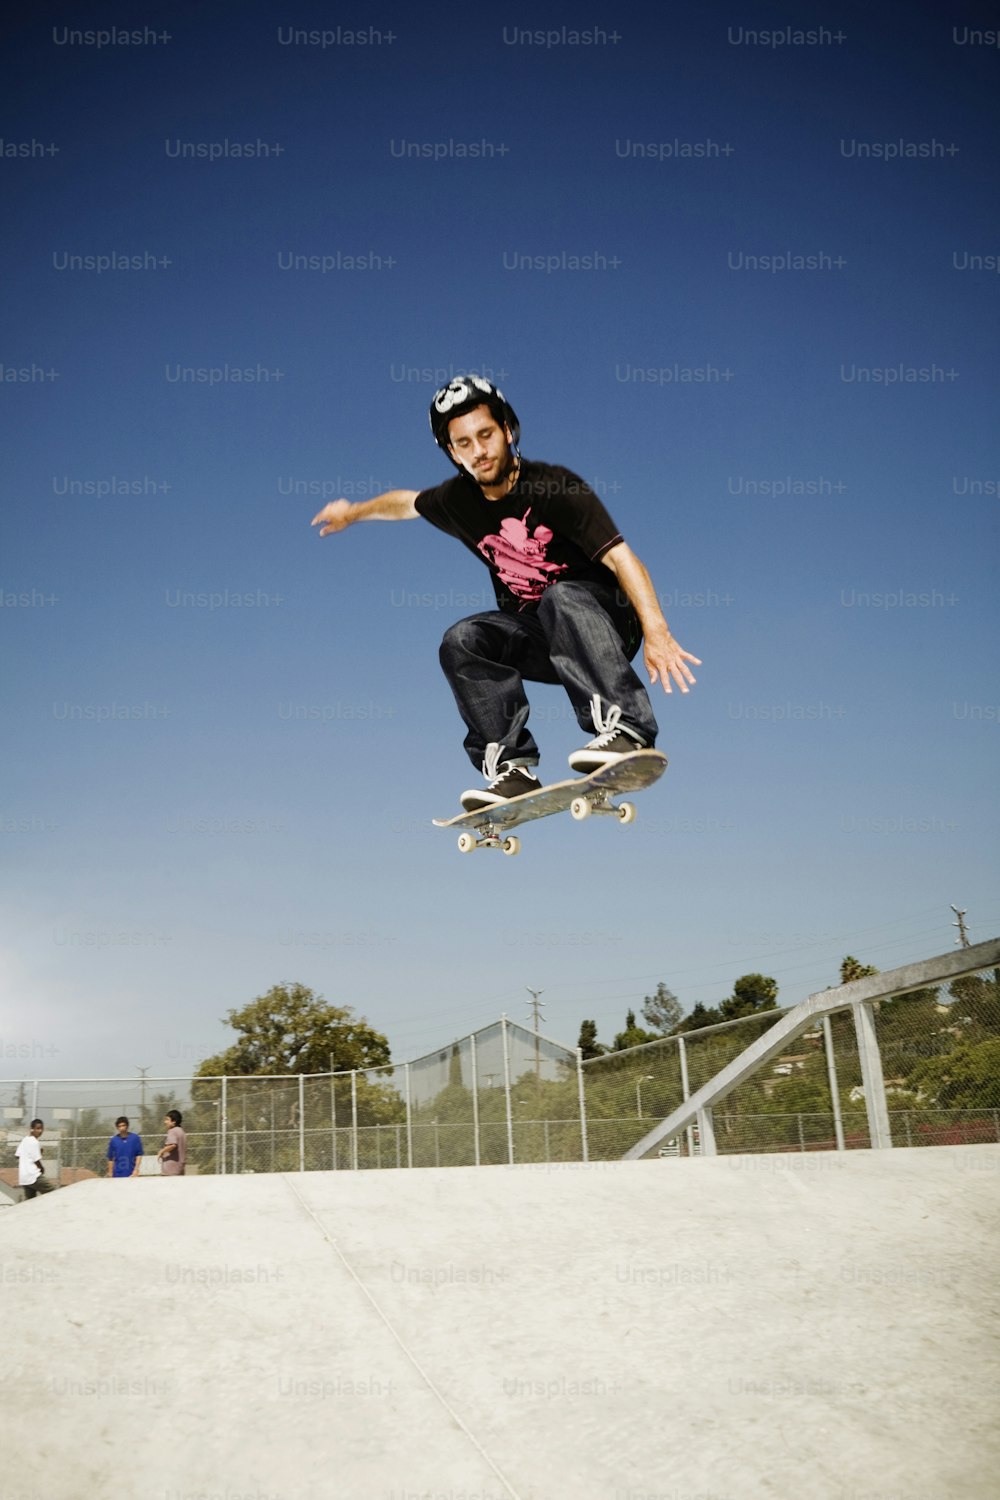 Un hombre volando por el aire mientras monta una patineta